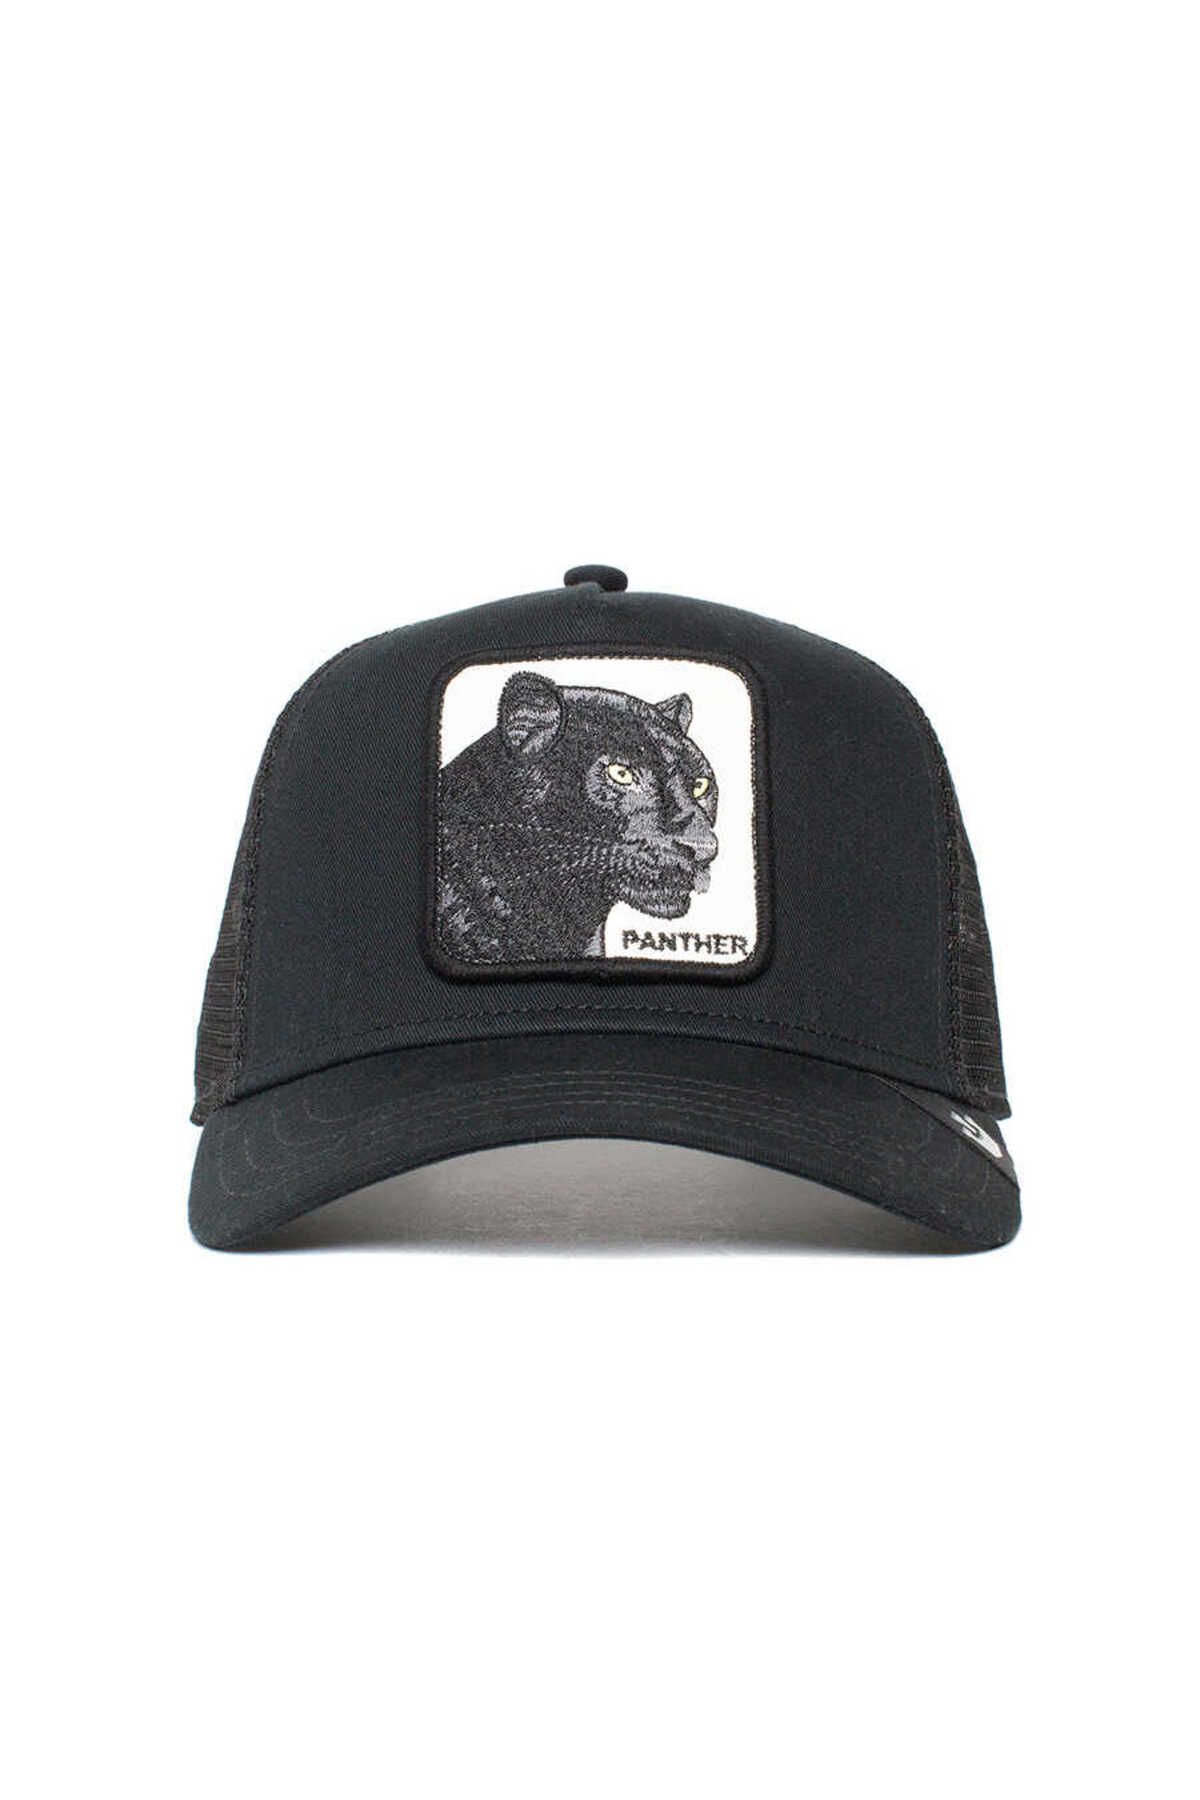 Goorin Bros The Panther ( Panter Figür ) Şapka